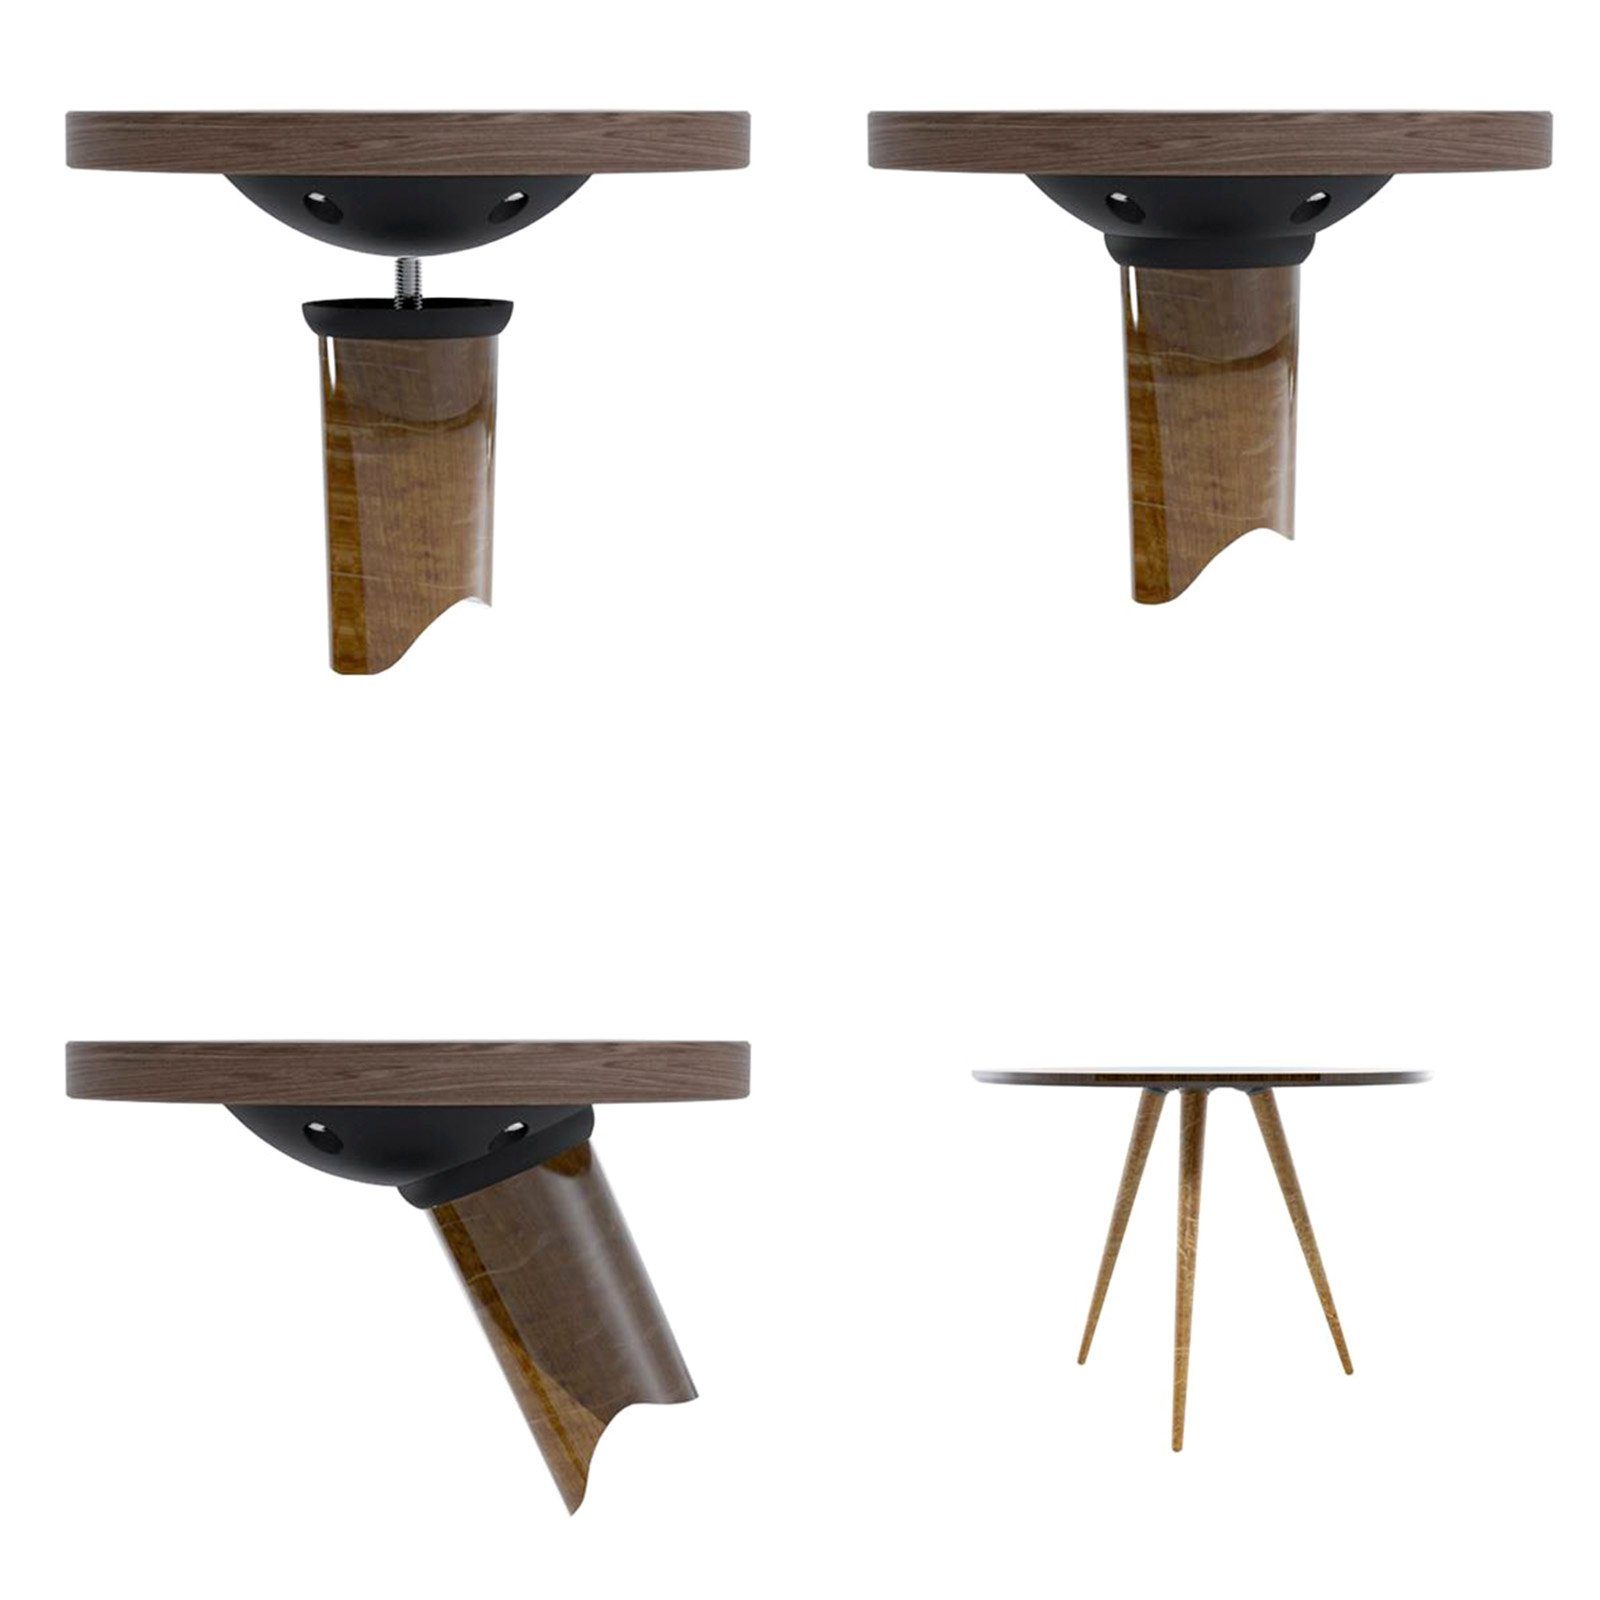 Tischbeschlag 0-20° (2 Tischverbinder St), Stück 2 SO-TECH® stufenlos M8 Farole Möbelbeschlag Möbelverbinder Tischbeinverbinder verstellbar